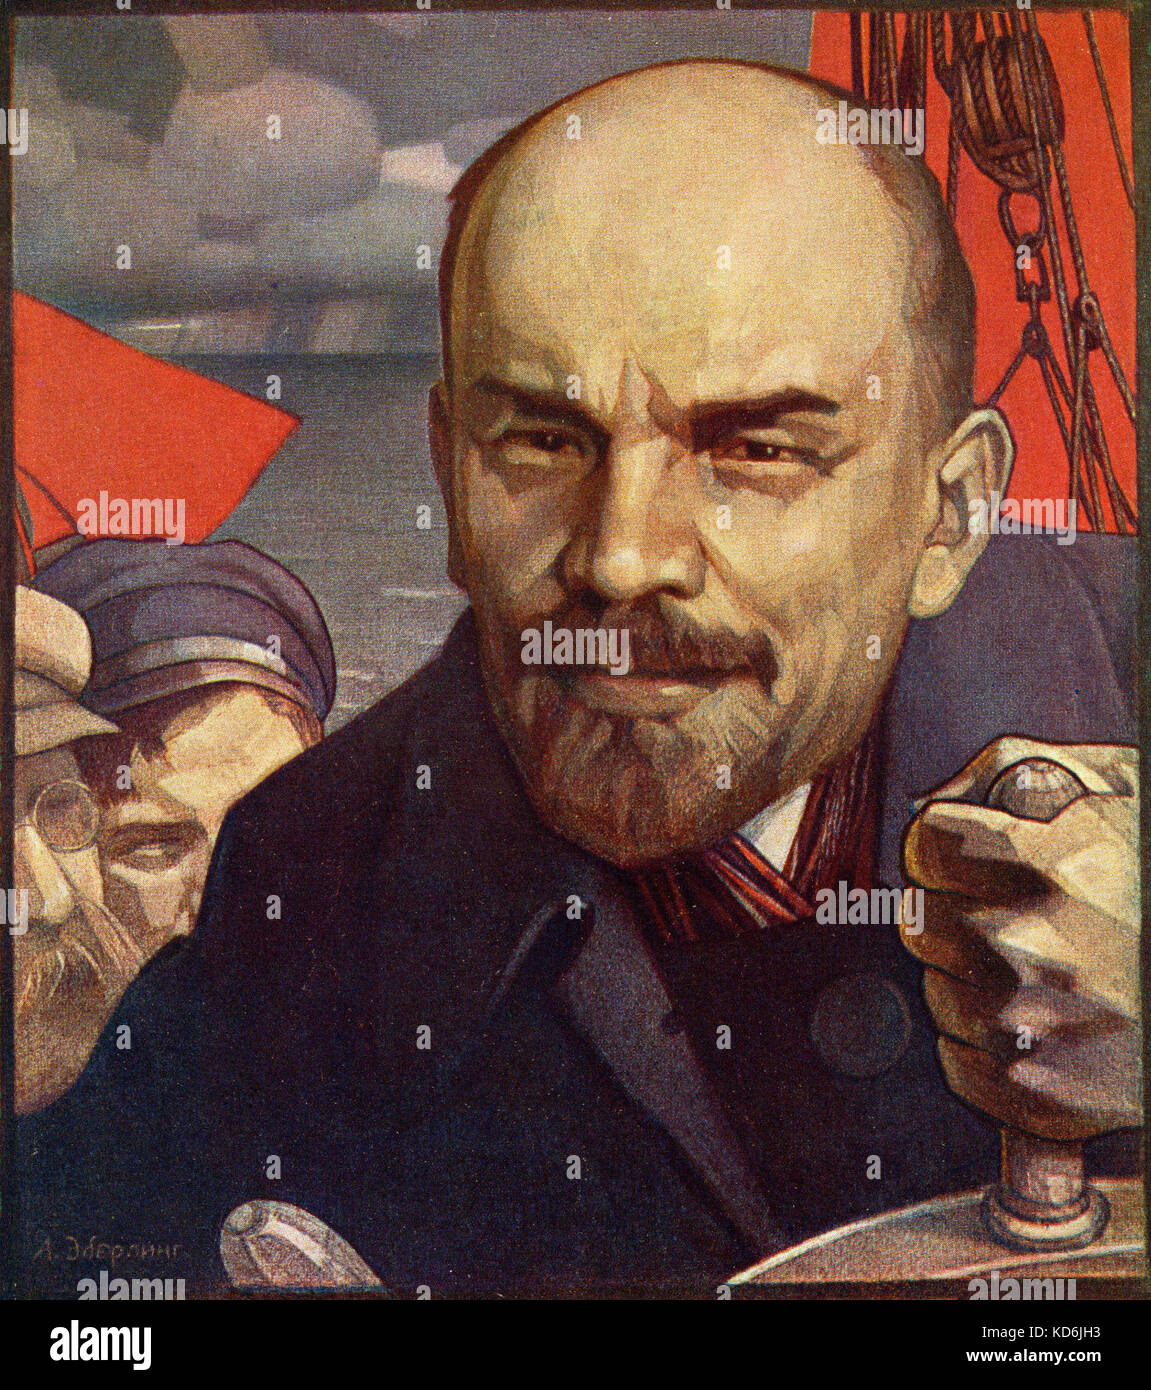 Vladimir Ilyich Lenin, leader russo di socialdemocratici, 1870-1924. Pittura idealizzata in stile sovietico, da A. Eberling. Cartolina. Foto Stock